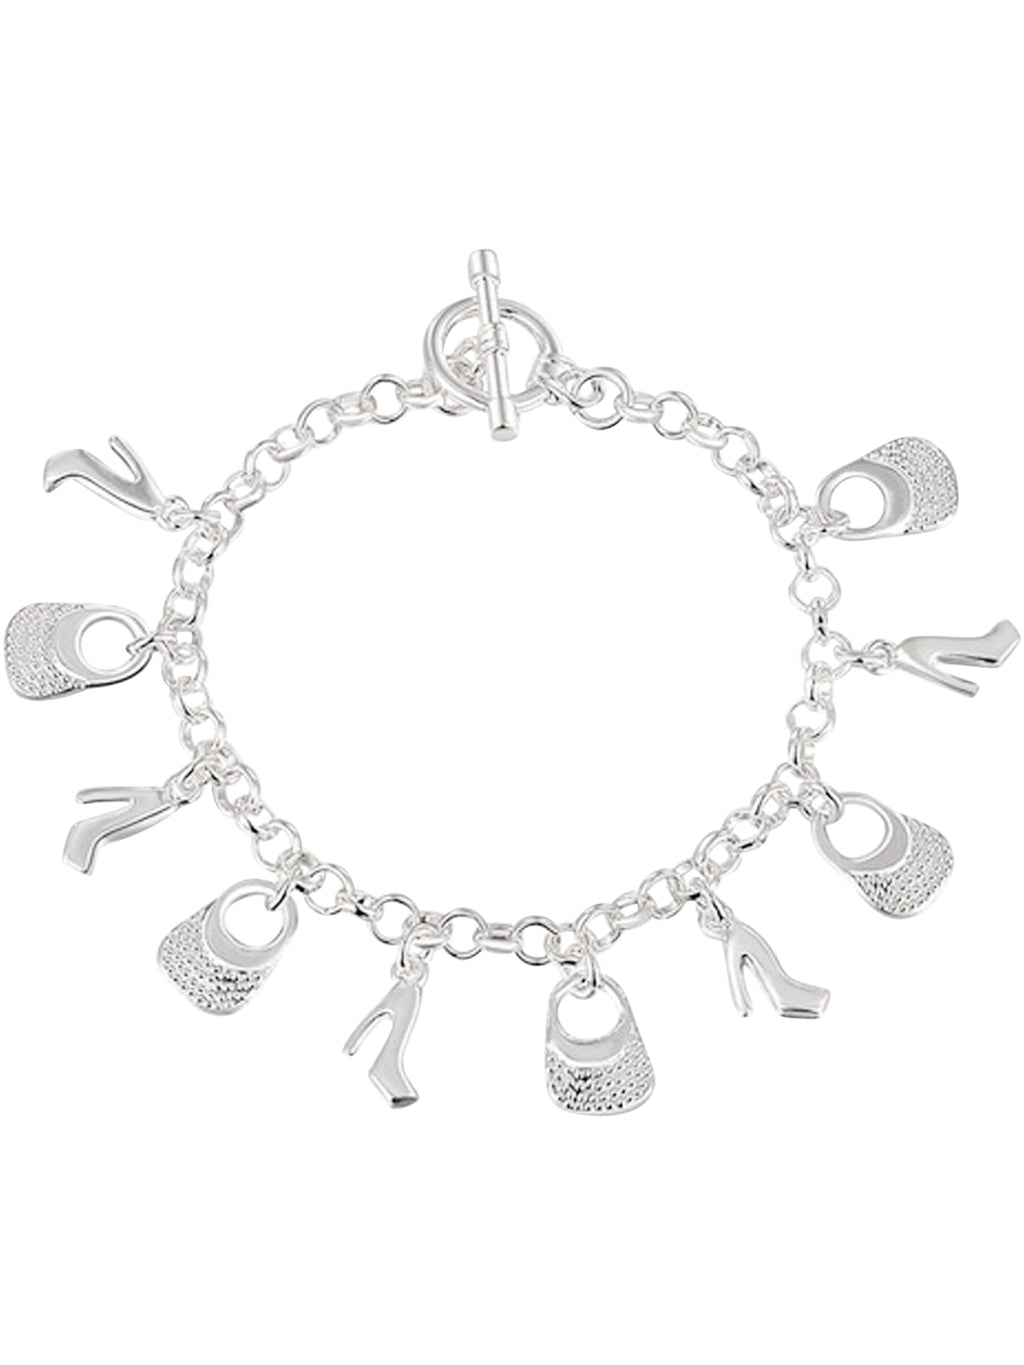 Handbags & Heels Sterling Silver Plated Bracelet